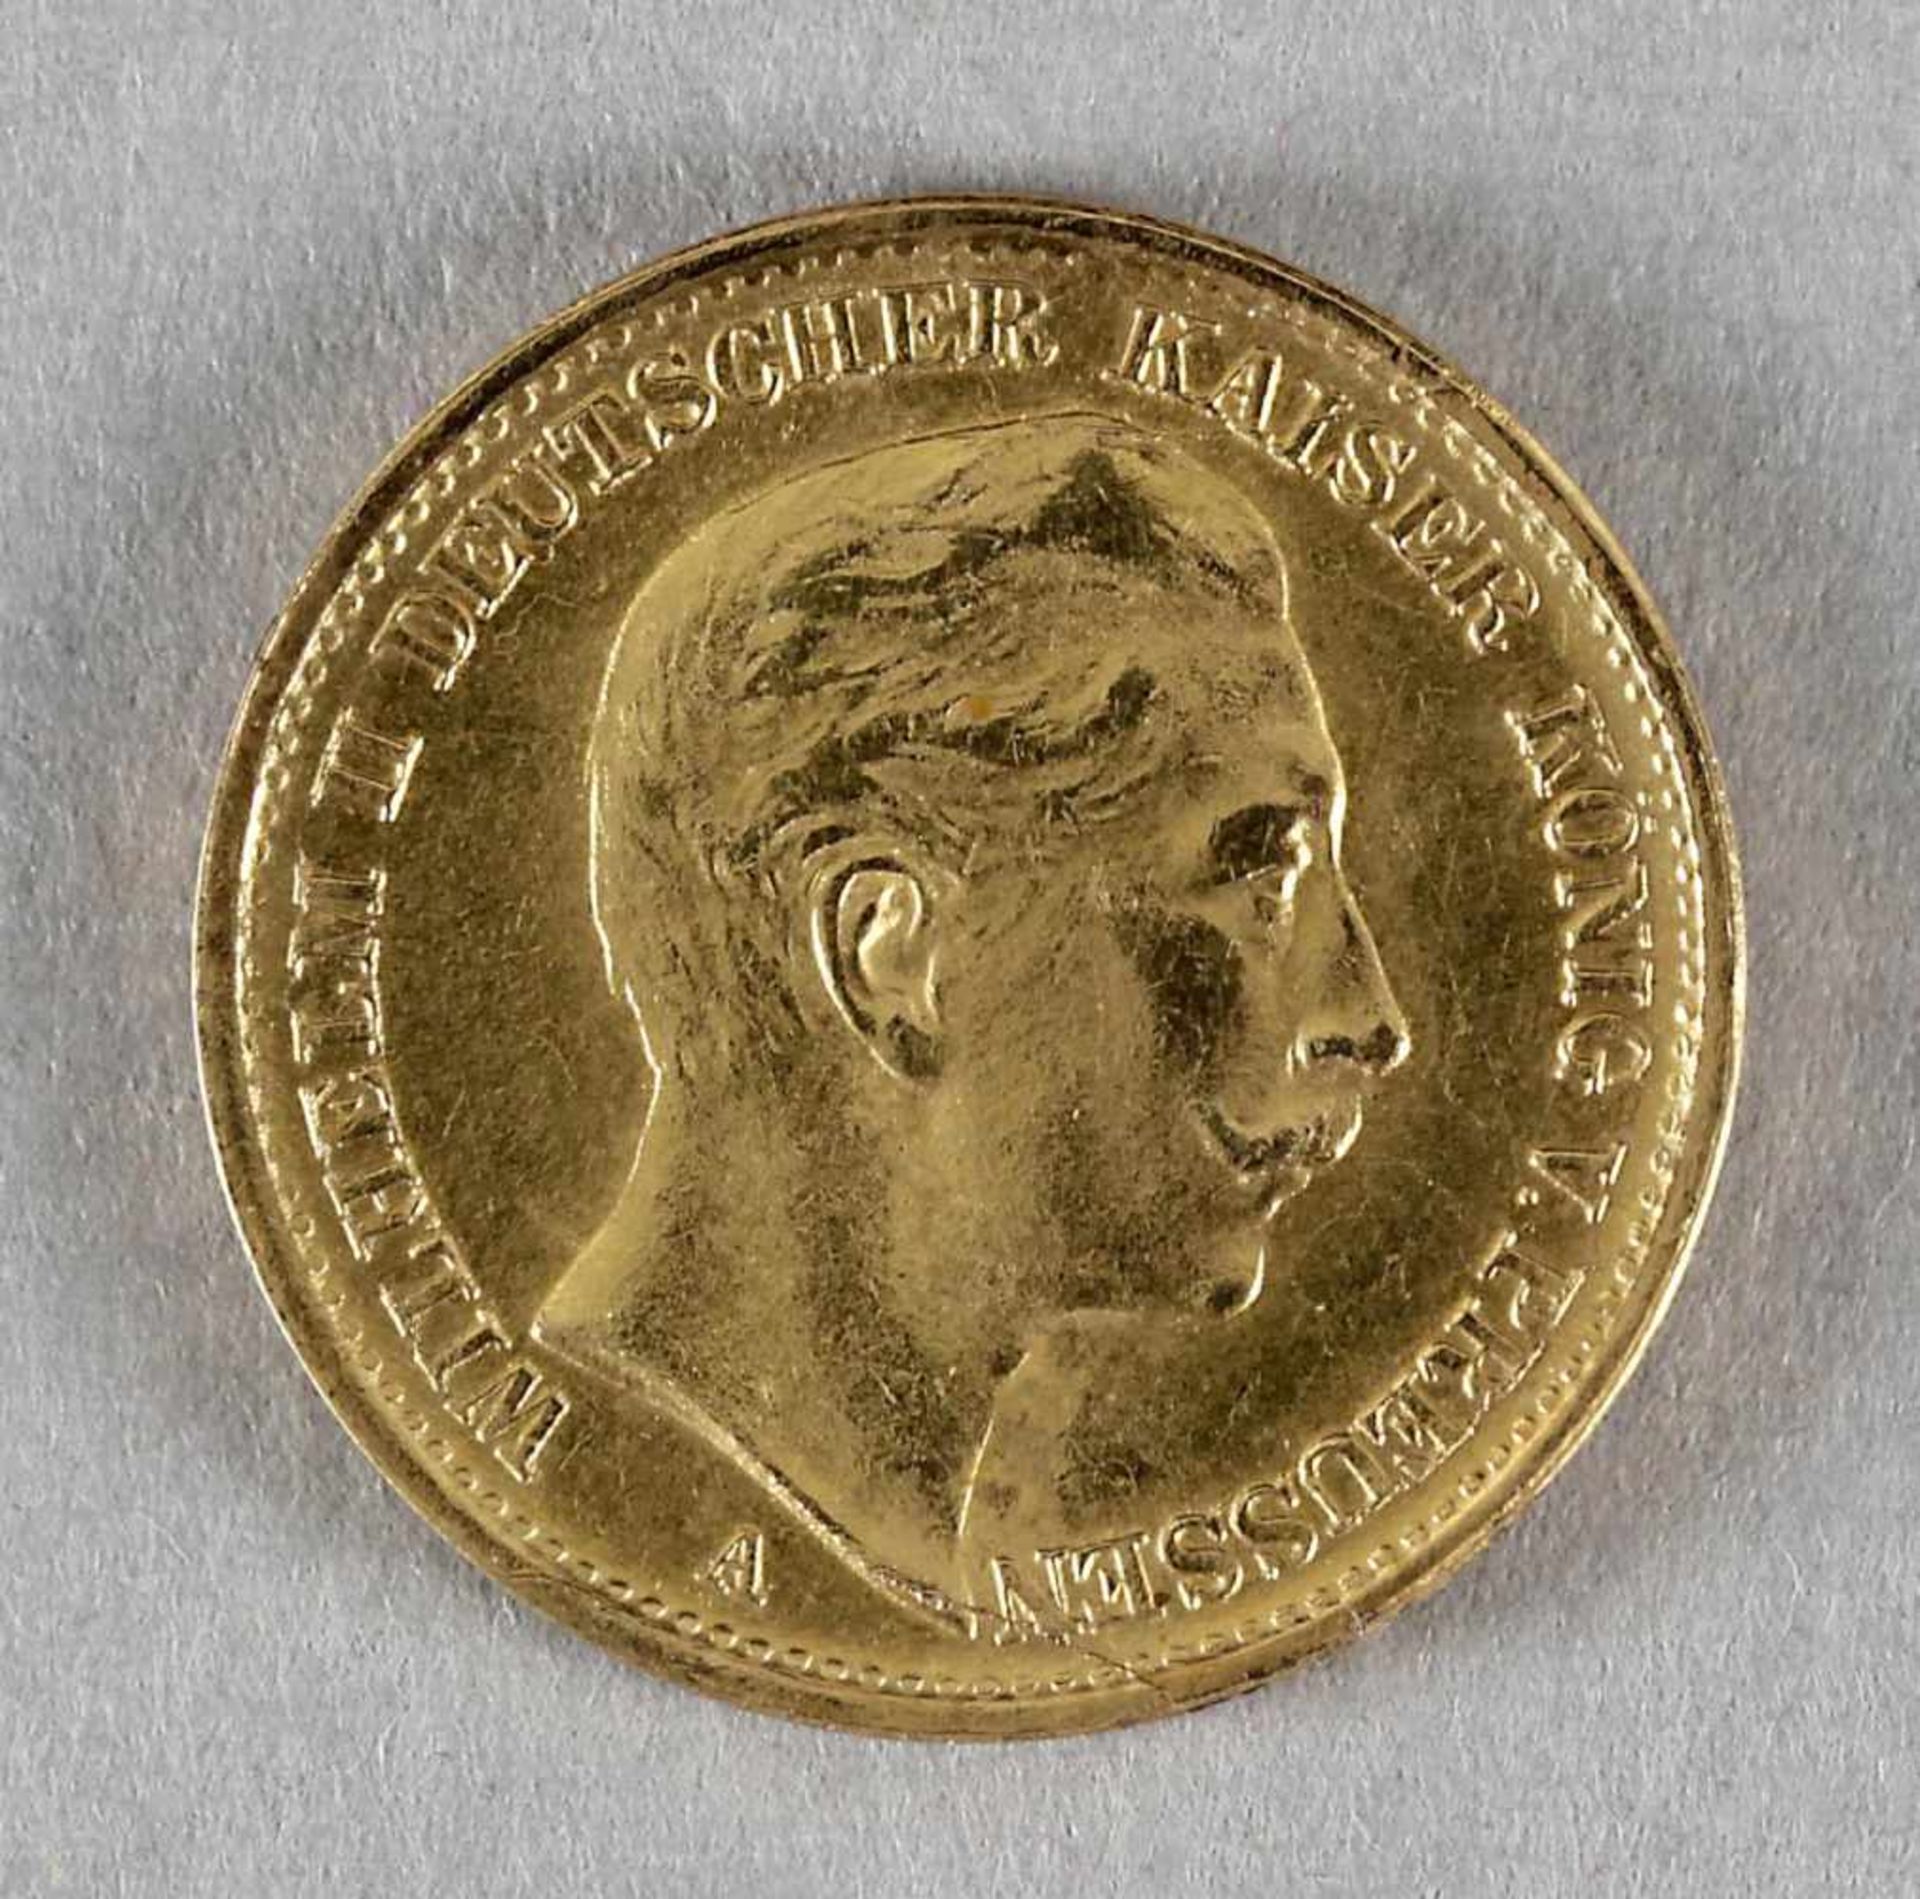 Goldmünze, 20 Mark, Wilhelm II. von Preußen, 1901 A